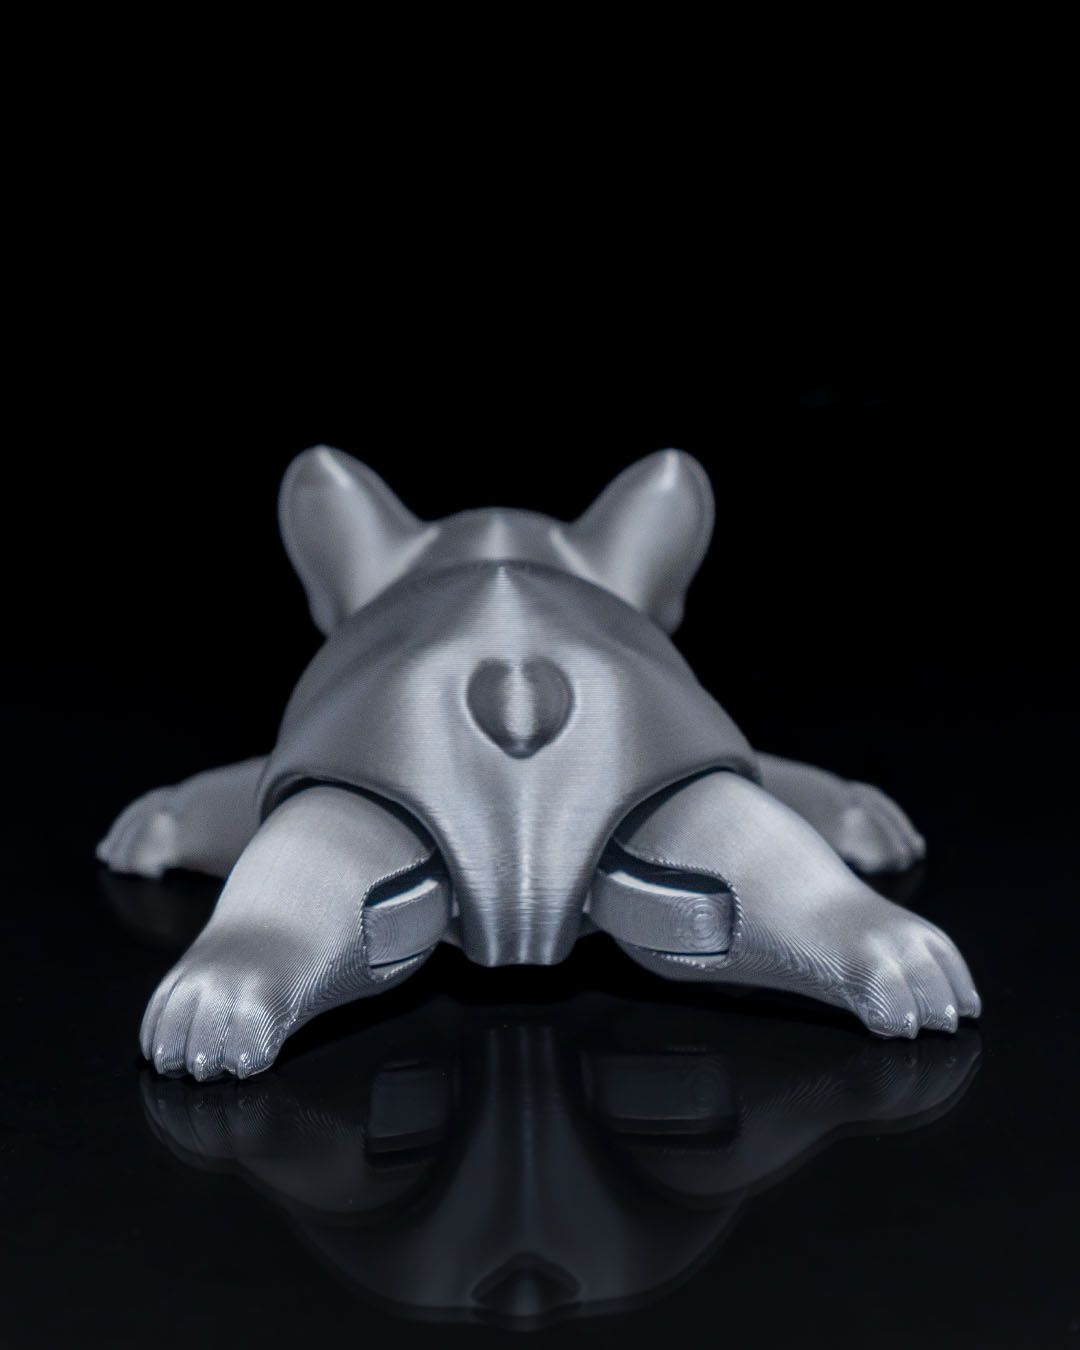 Mozgatható lábú francia bulldog szobor